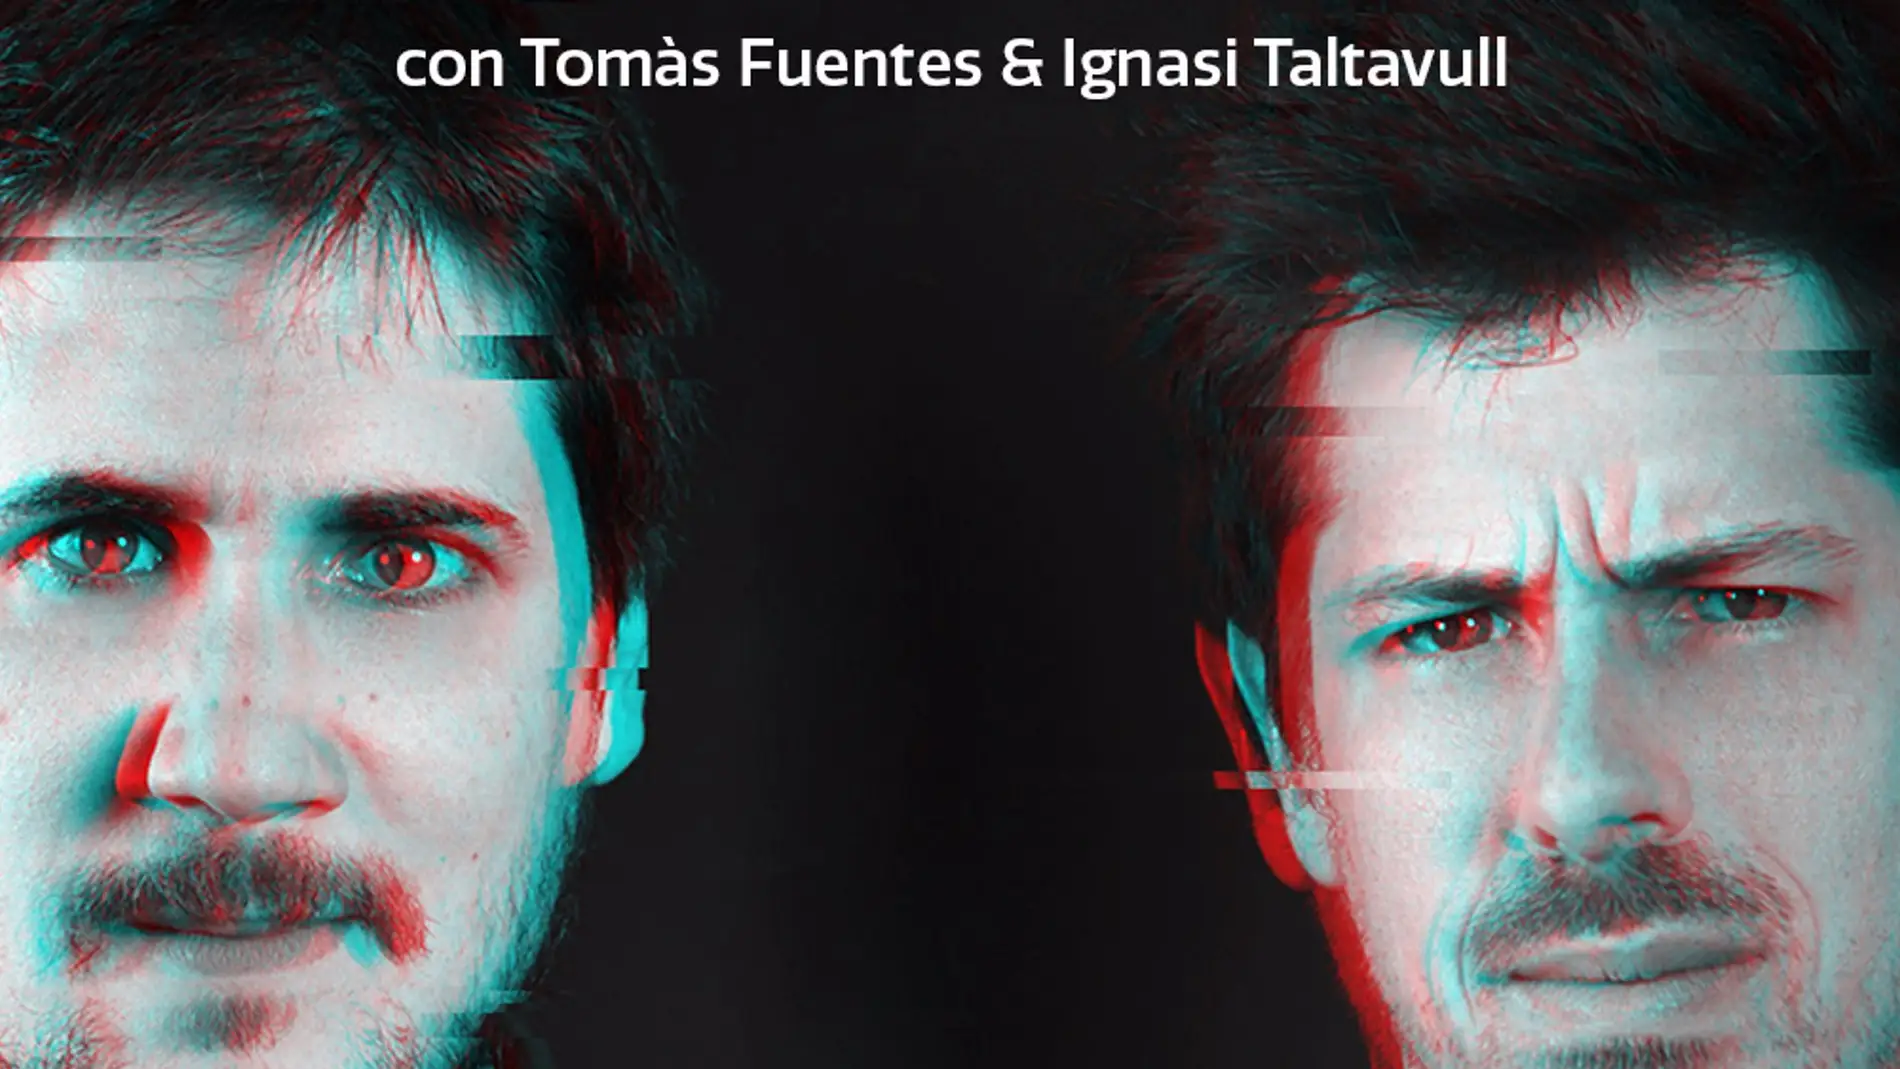 El espectáculo 'La Ruina' de Ignasi Taltavull y Tomás Fuentes lleva este viernes a Badajoz con entradas ya agotadas